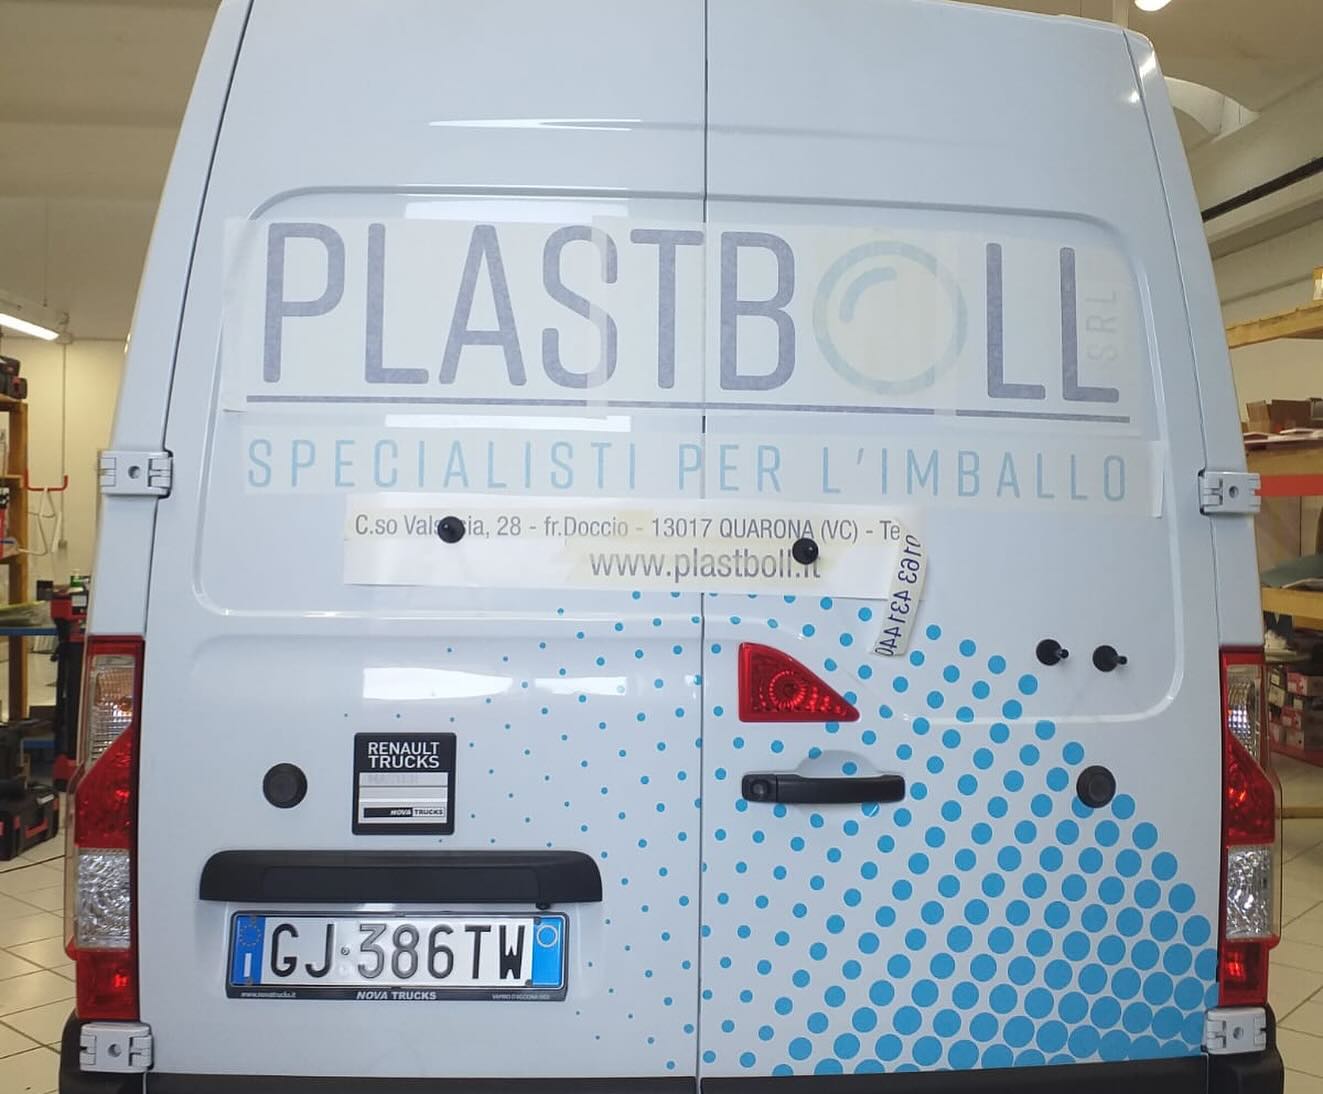 officine grafiche wrapping mezzo di trasporto plastboll